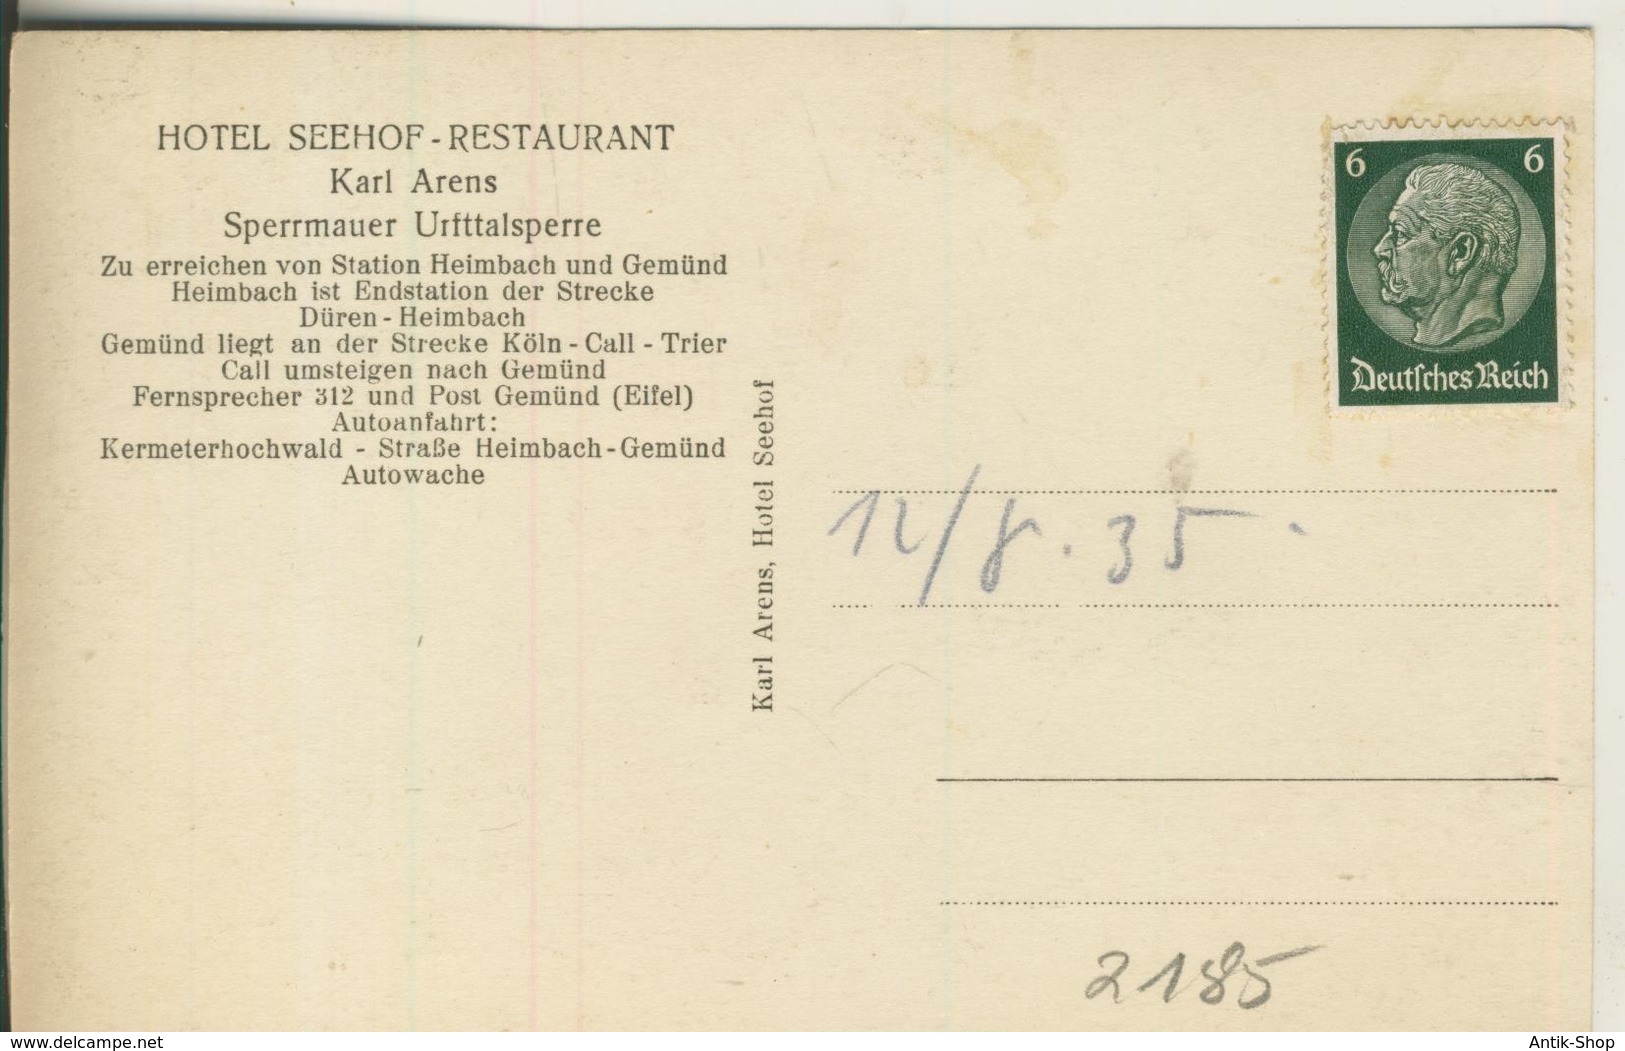 Sperrmauer-Ursttalsperre V. 1935 Mit Hotel Seehof Restaurant  (2185) - Schleiden